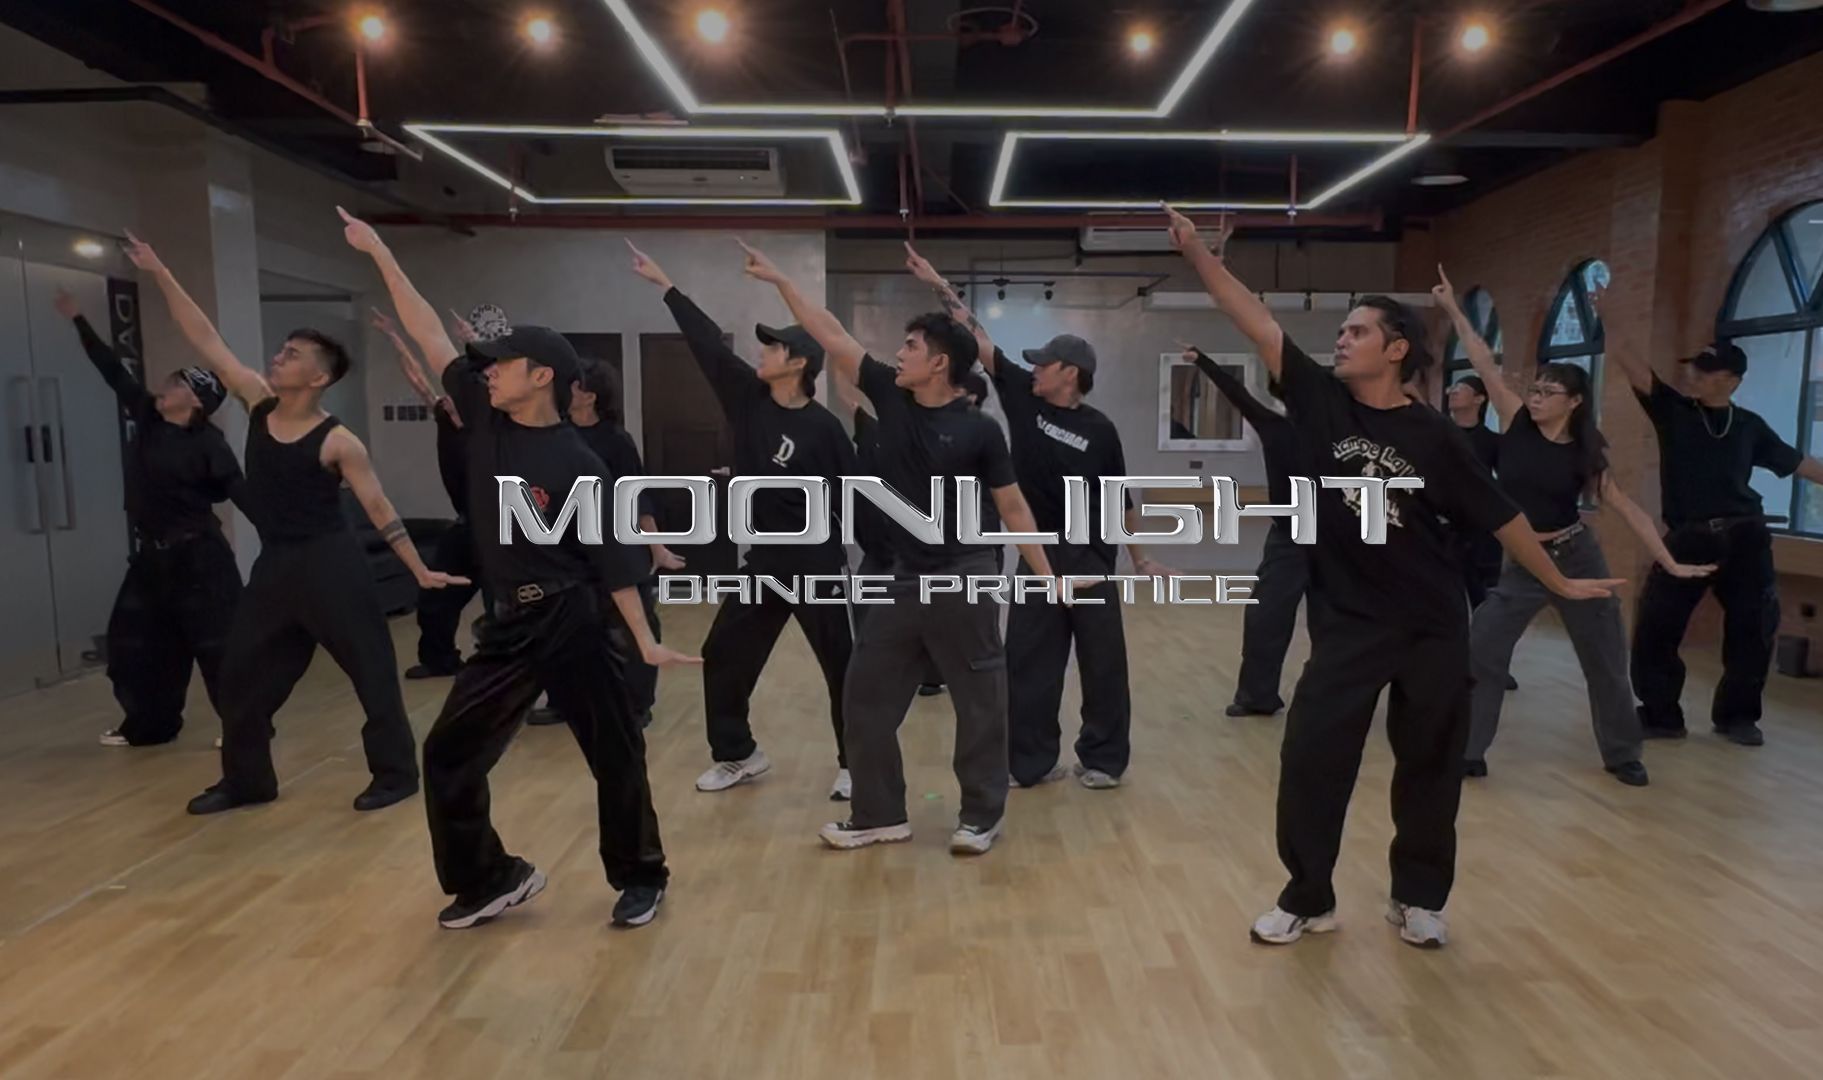 【SB19】 'MOONLIGHT' Dance Practice 舞蹈練習室